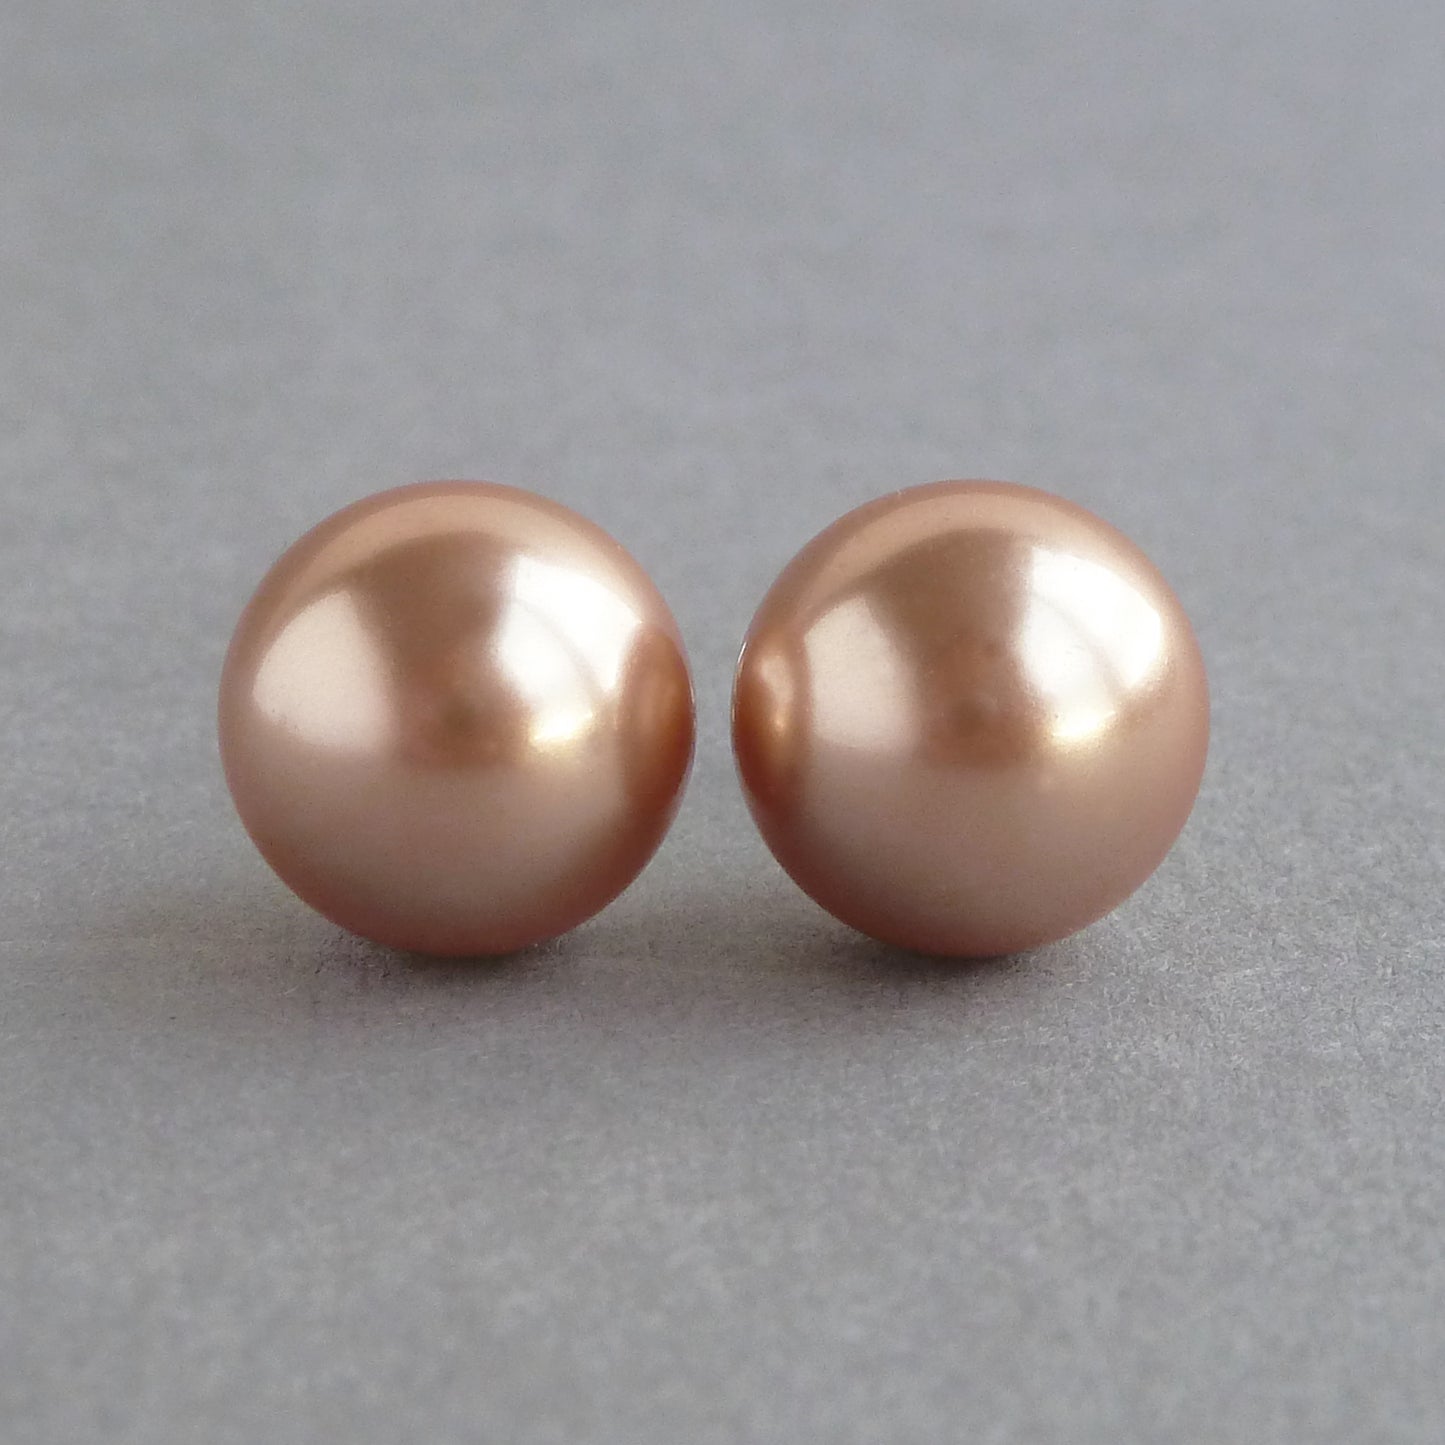 12mm rose gold pearl stud earrings